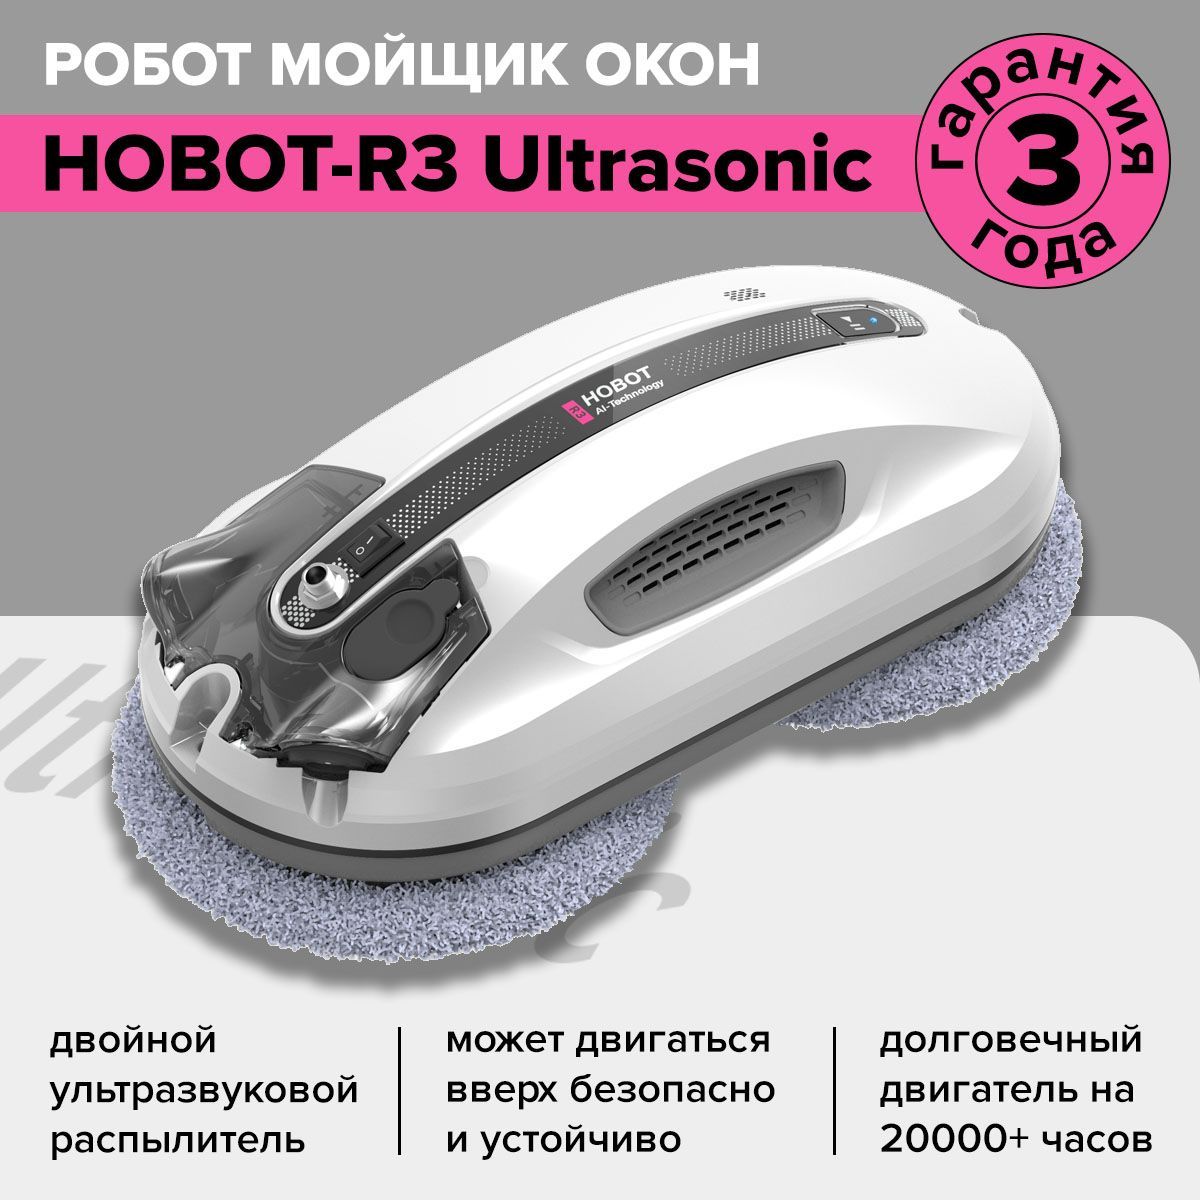 Hobot r3 ultrasonic купить. Hobot-r3 Ultrasonic.